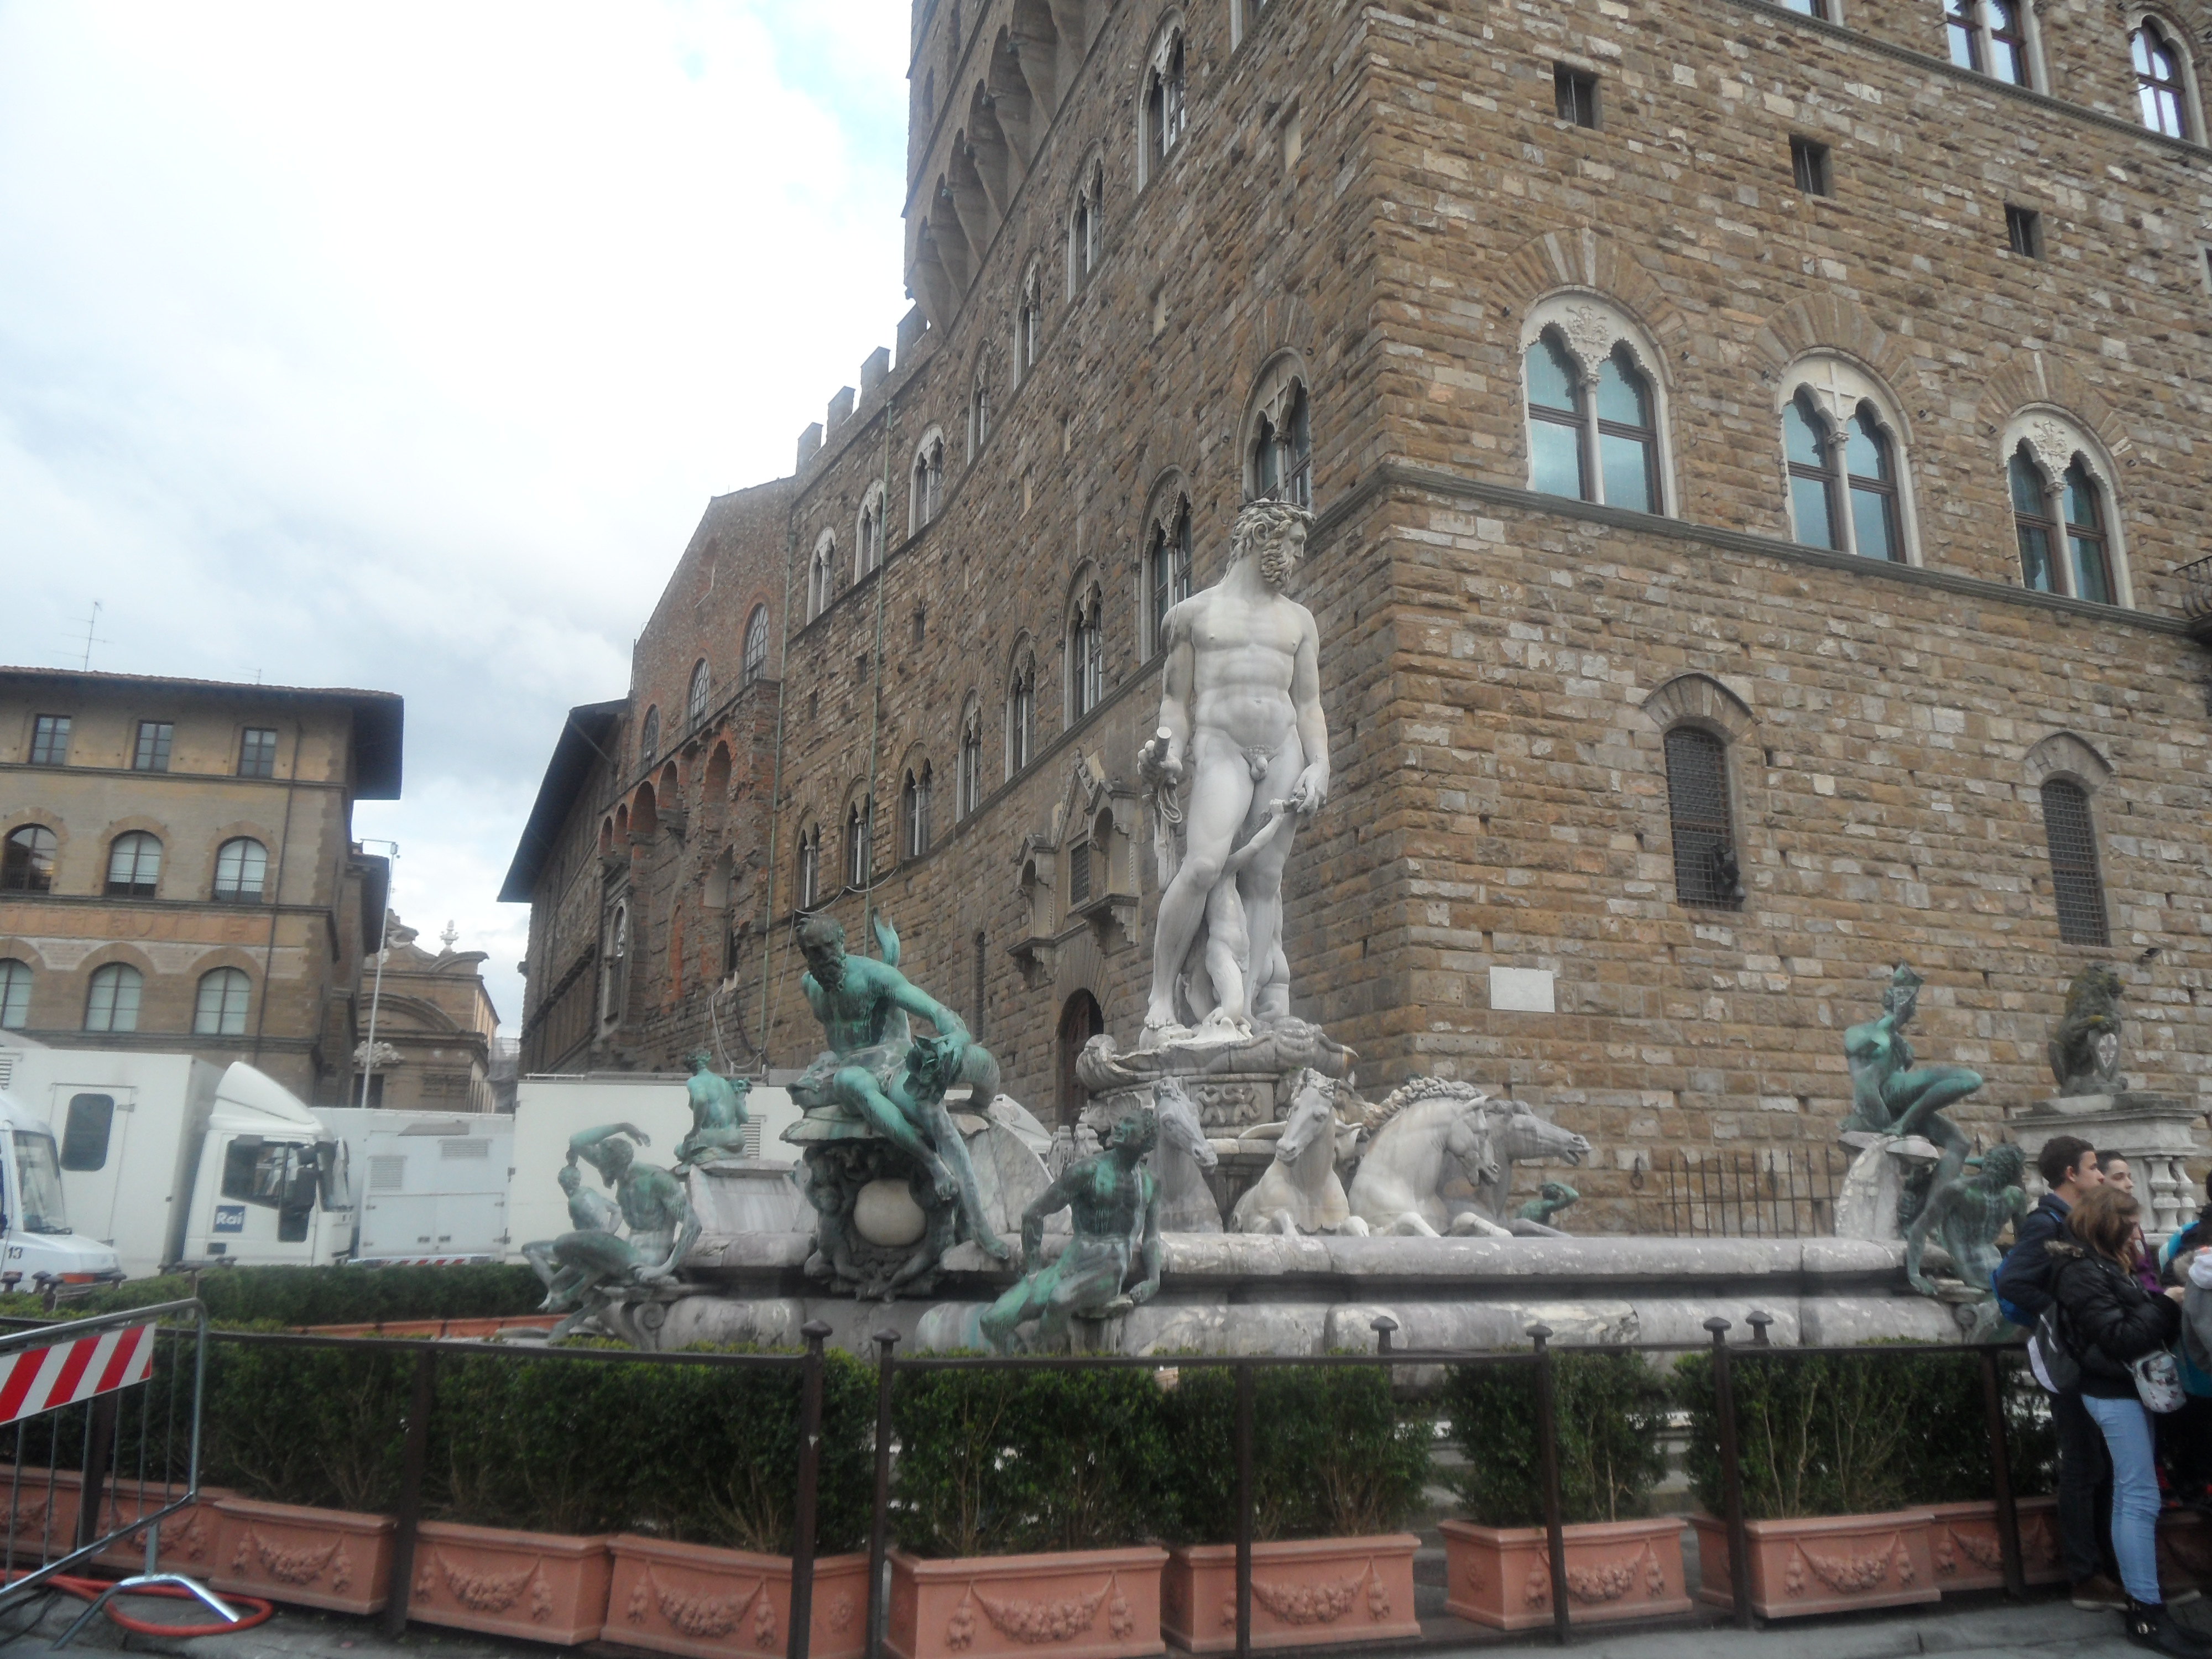 【携程攻略】佛罗伦萨市政广场景点,佛罗伦萨是意大利文艺复兴的发祥